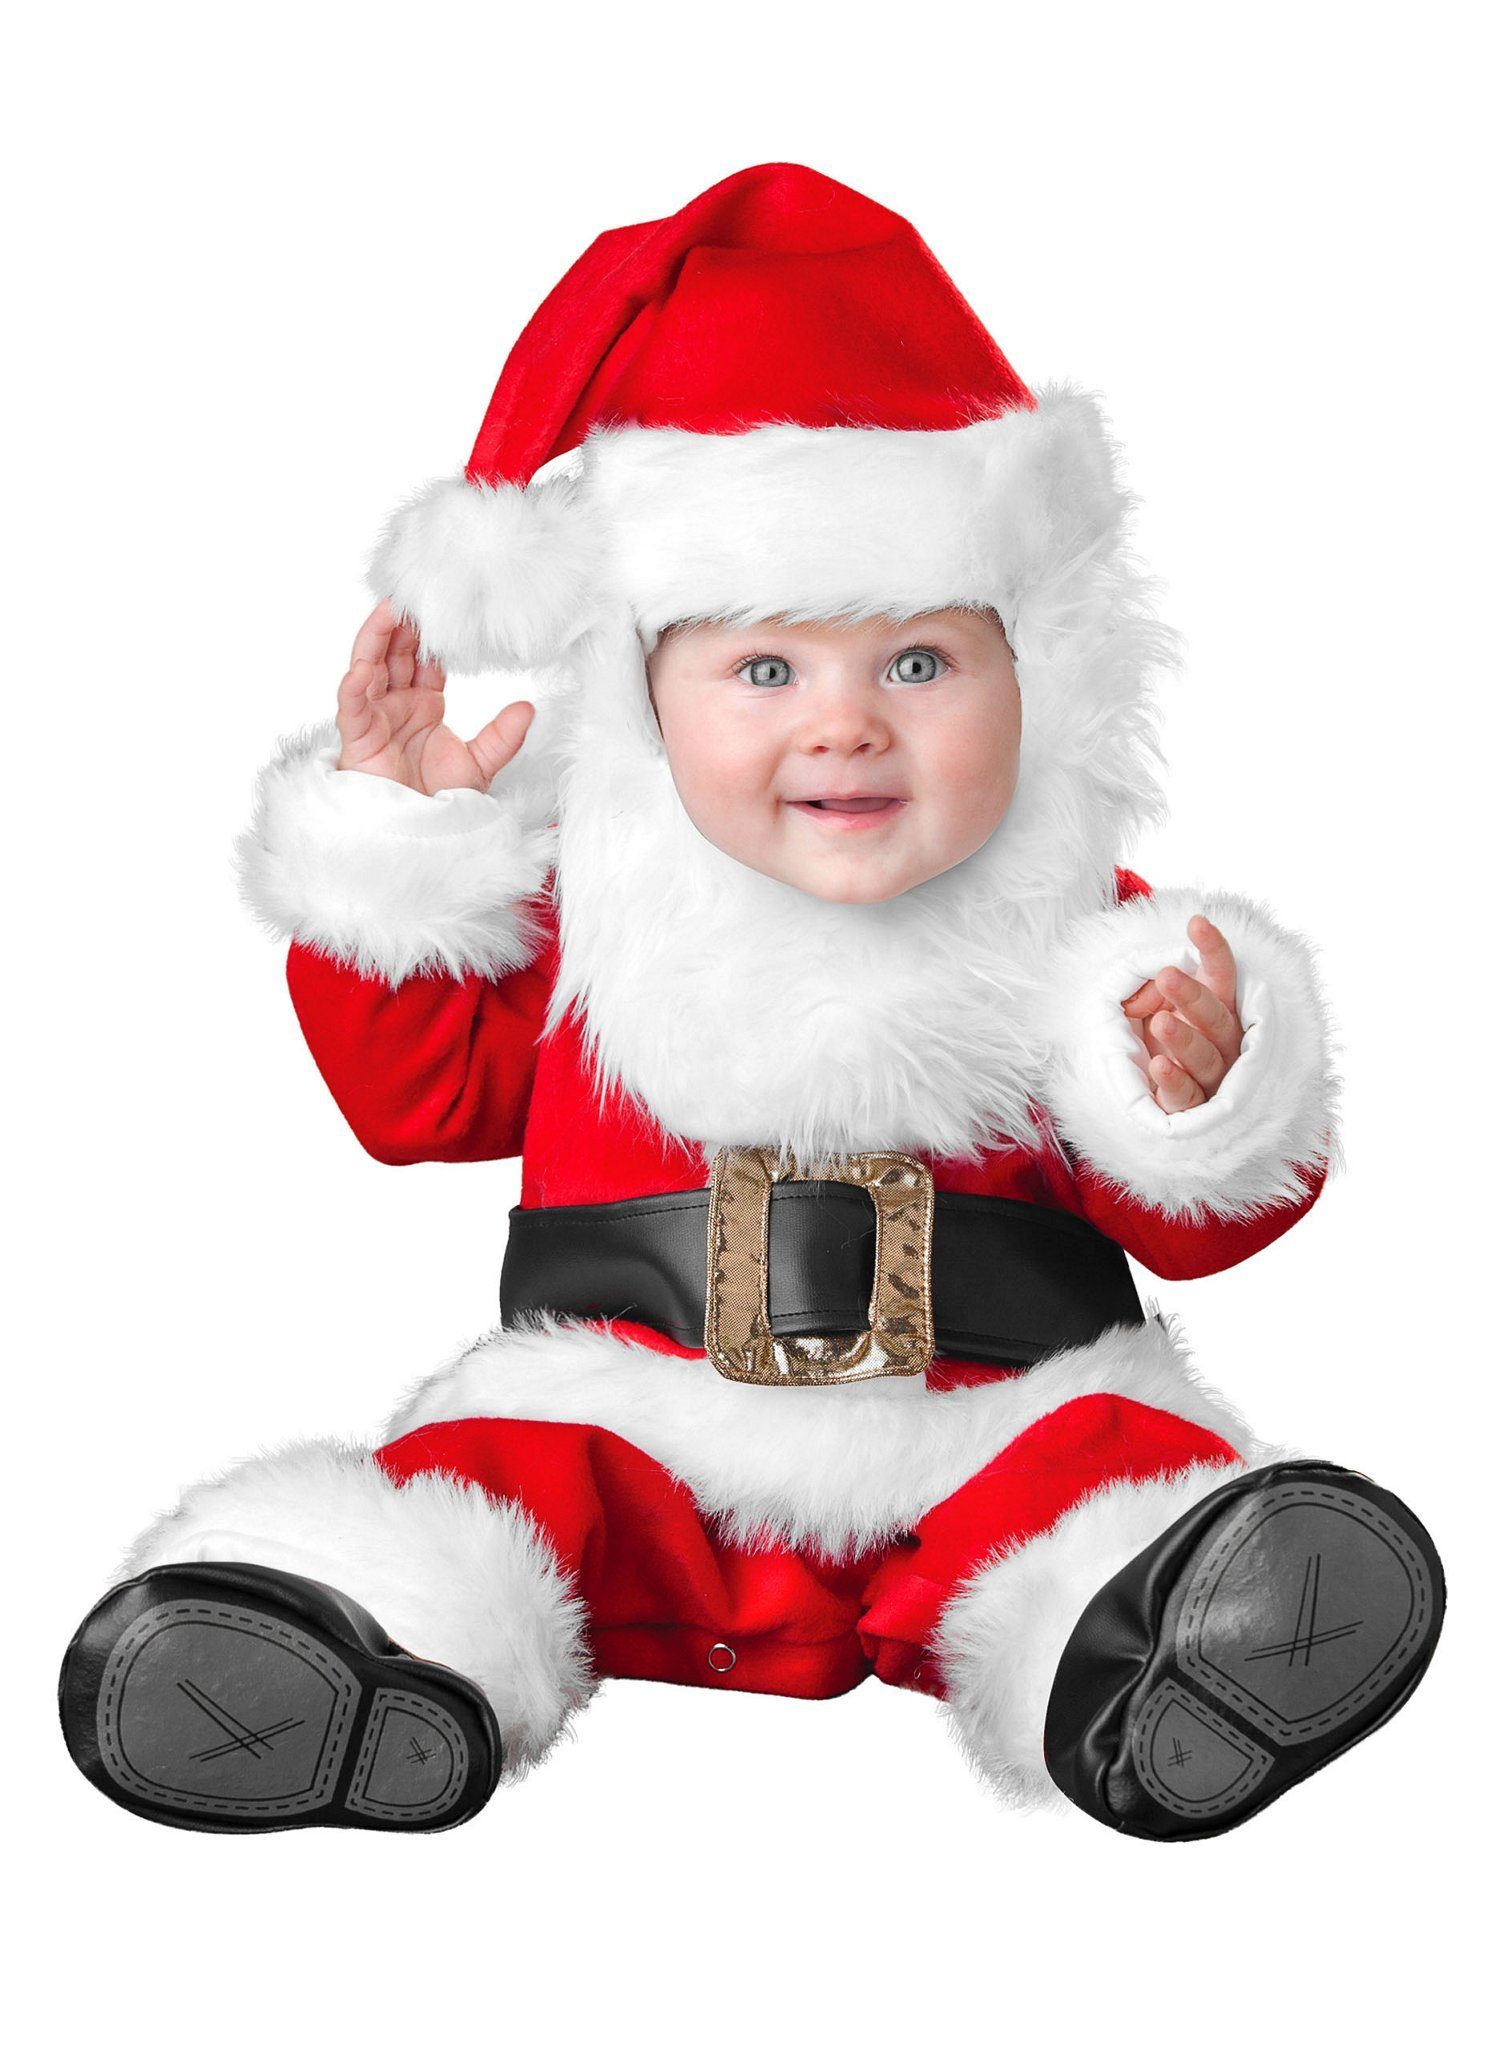 In Character Kostüm Bärtiger Weihnachtsmann, Lustiges Weihnachtskostüm für kleine Santa Cläuschen